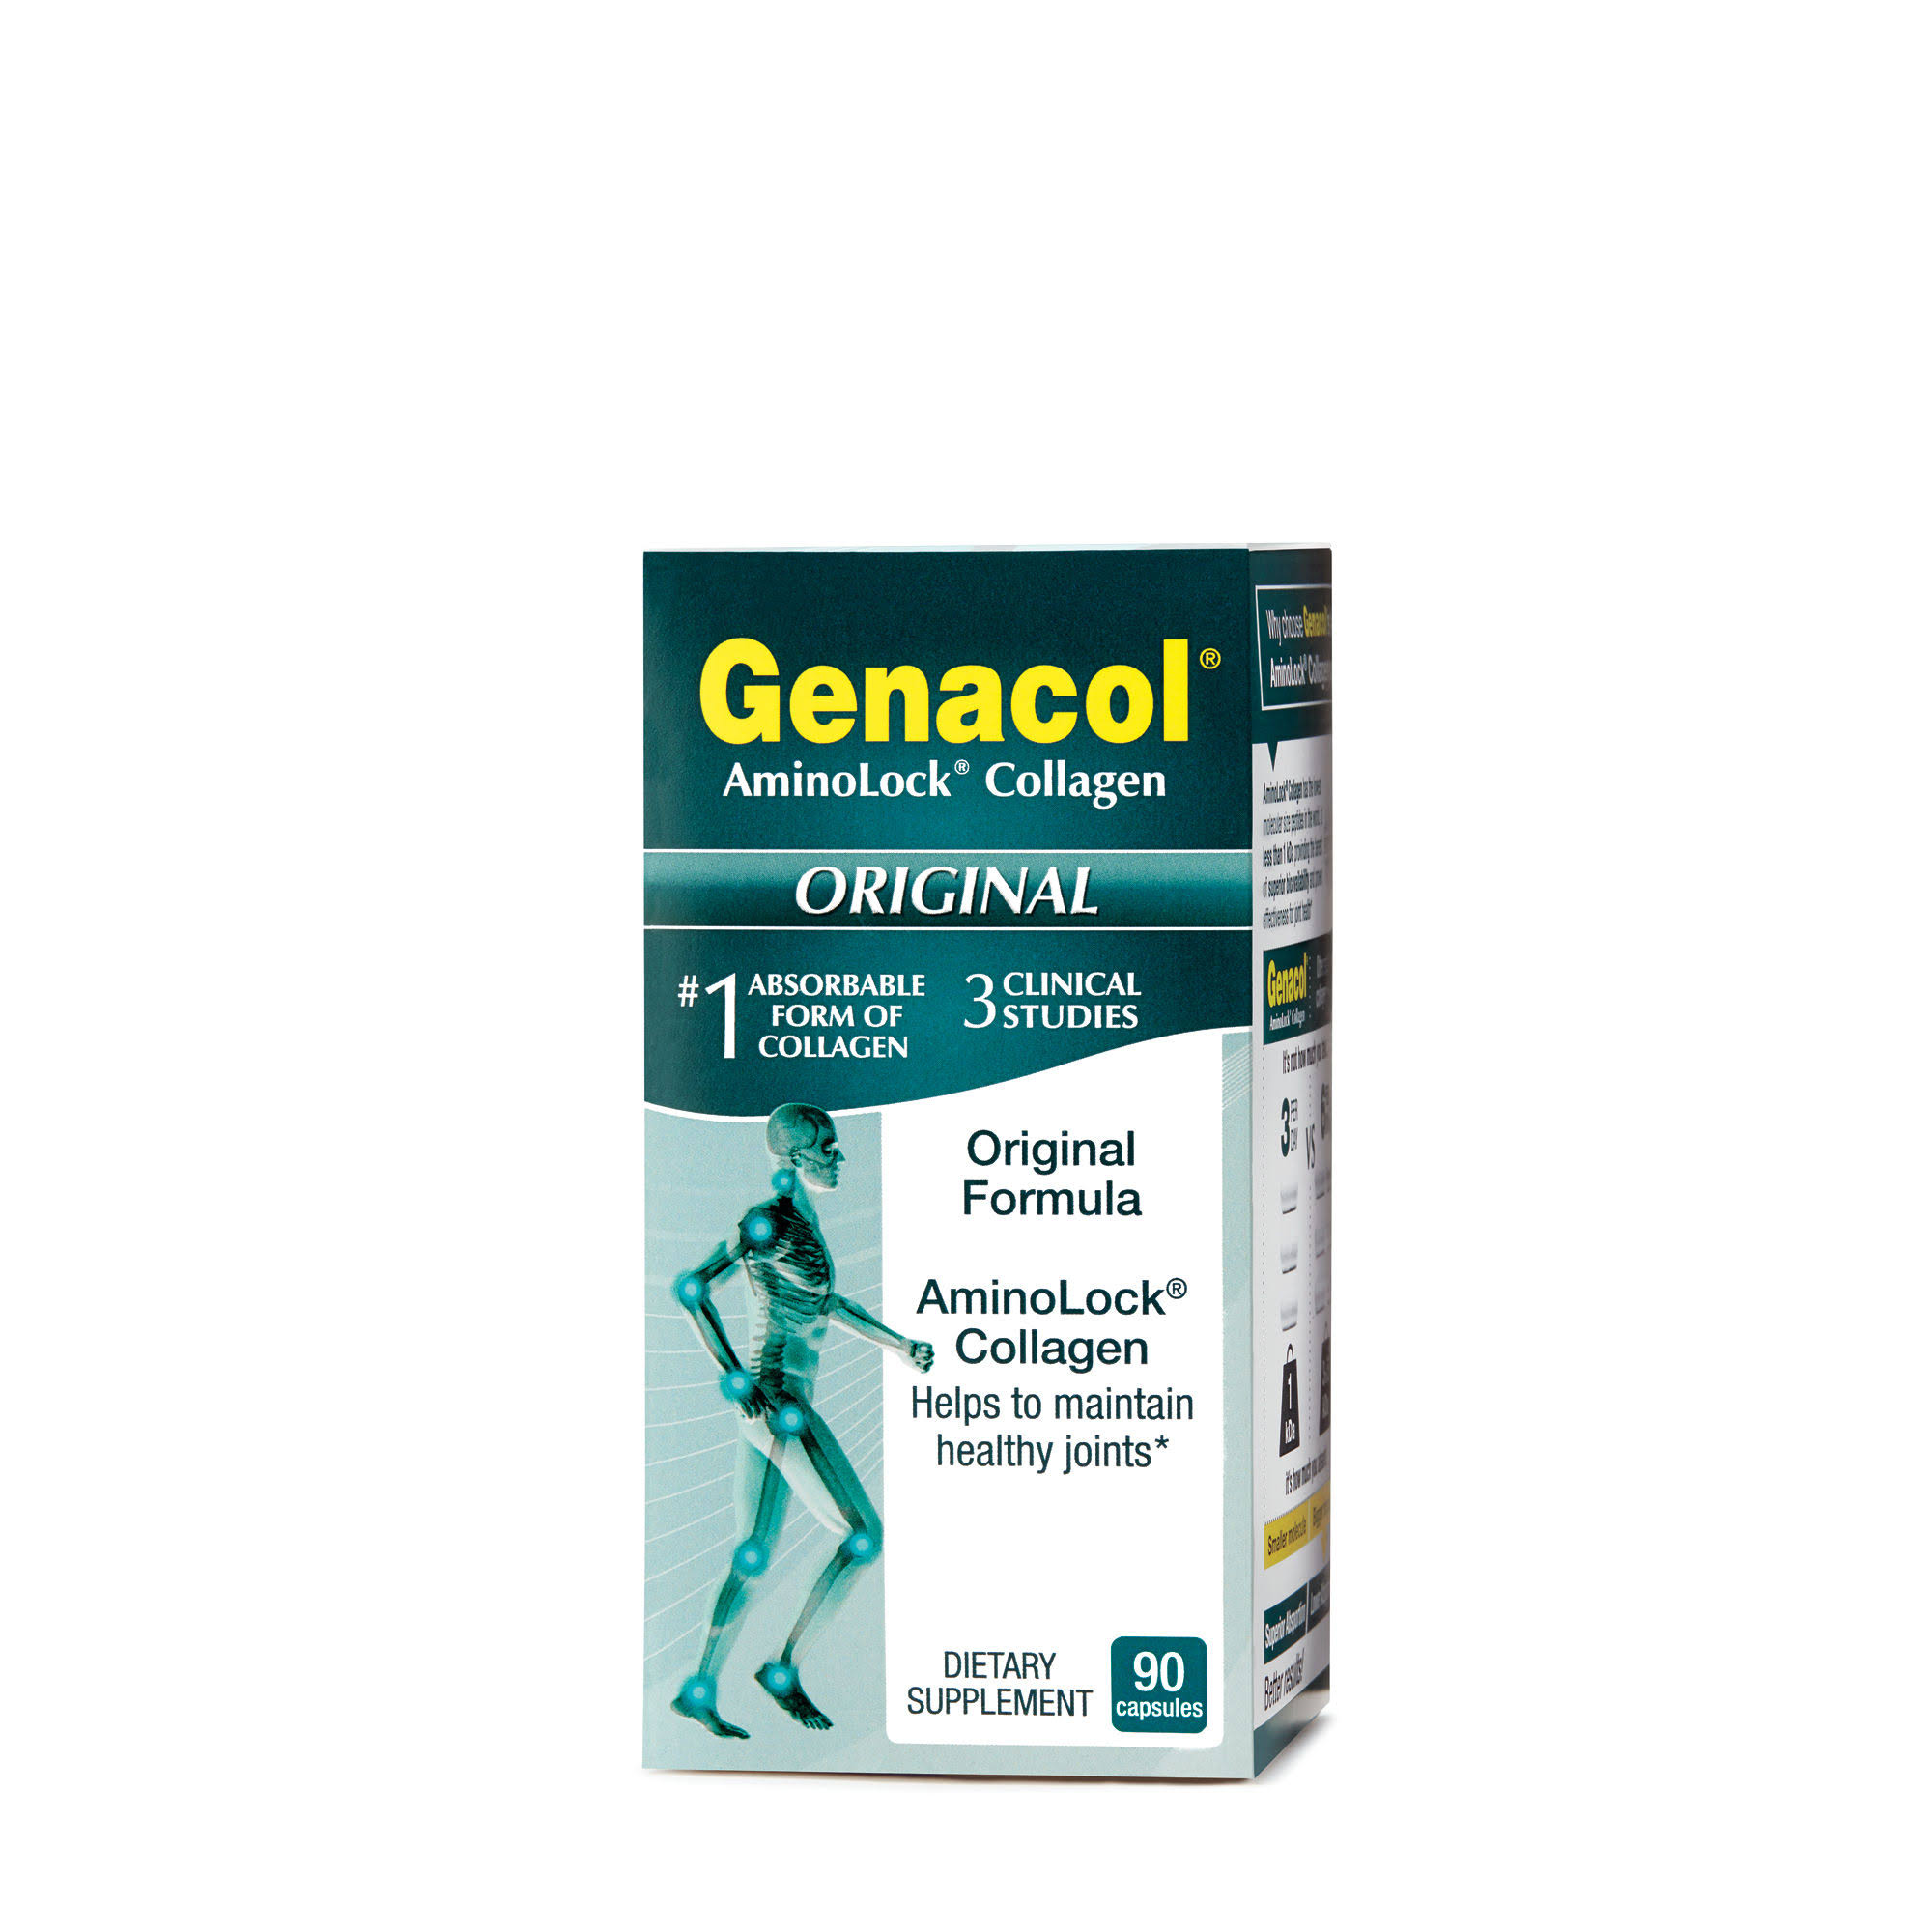 Genacol Bio-active Collagen Matrix - 90 Capsules